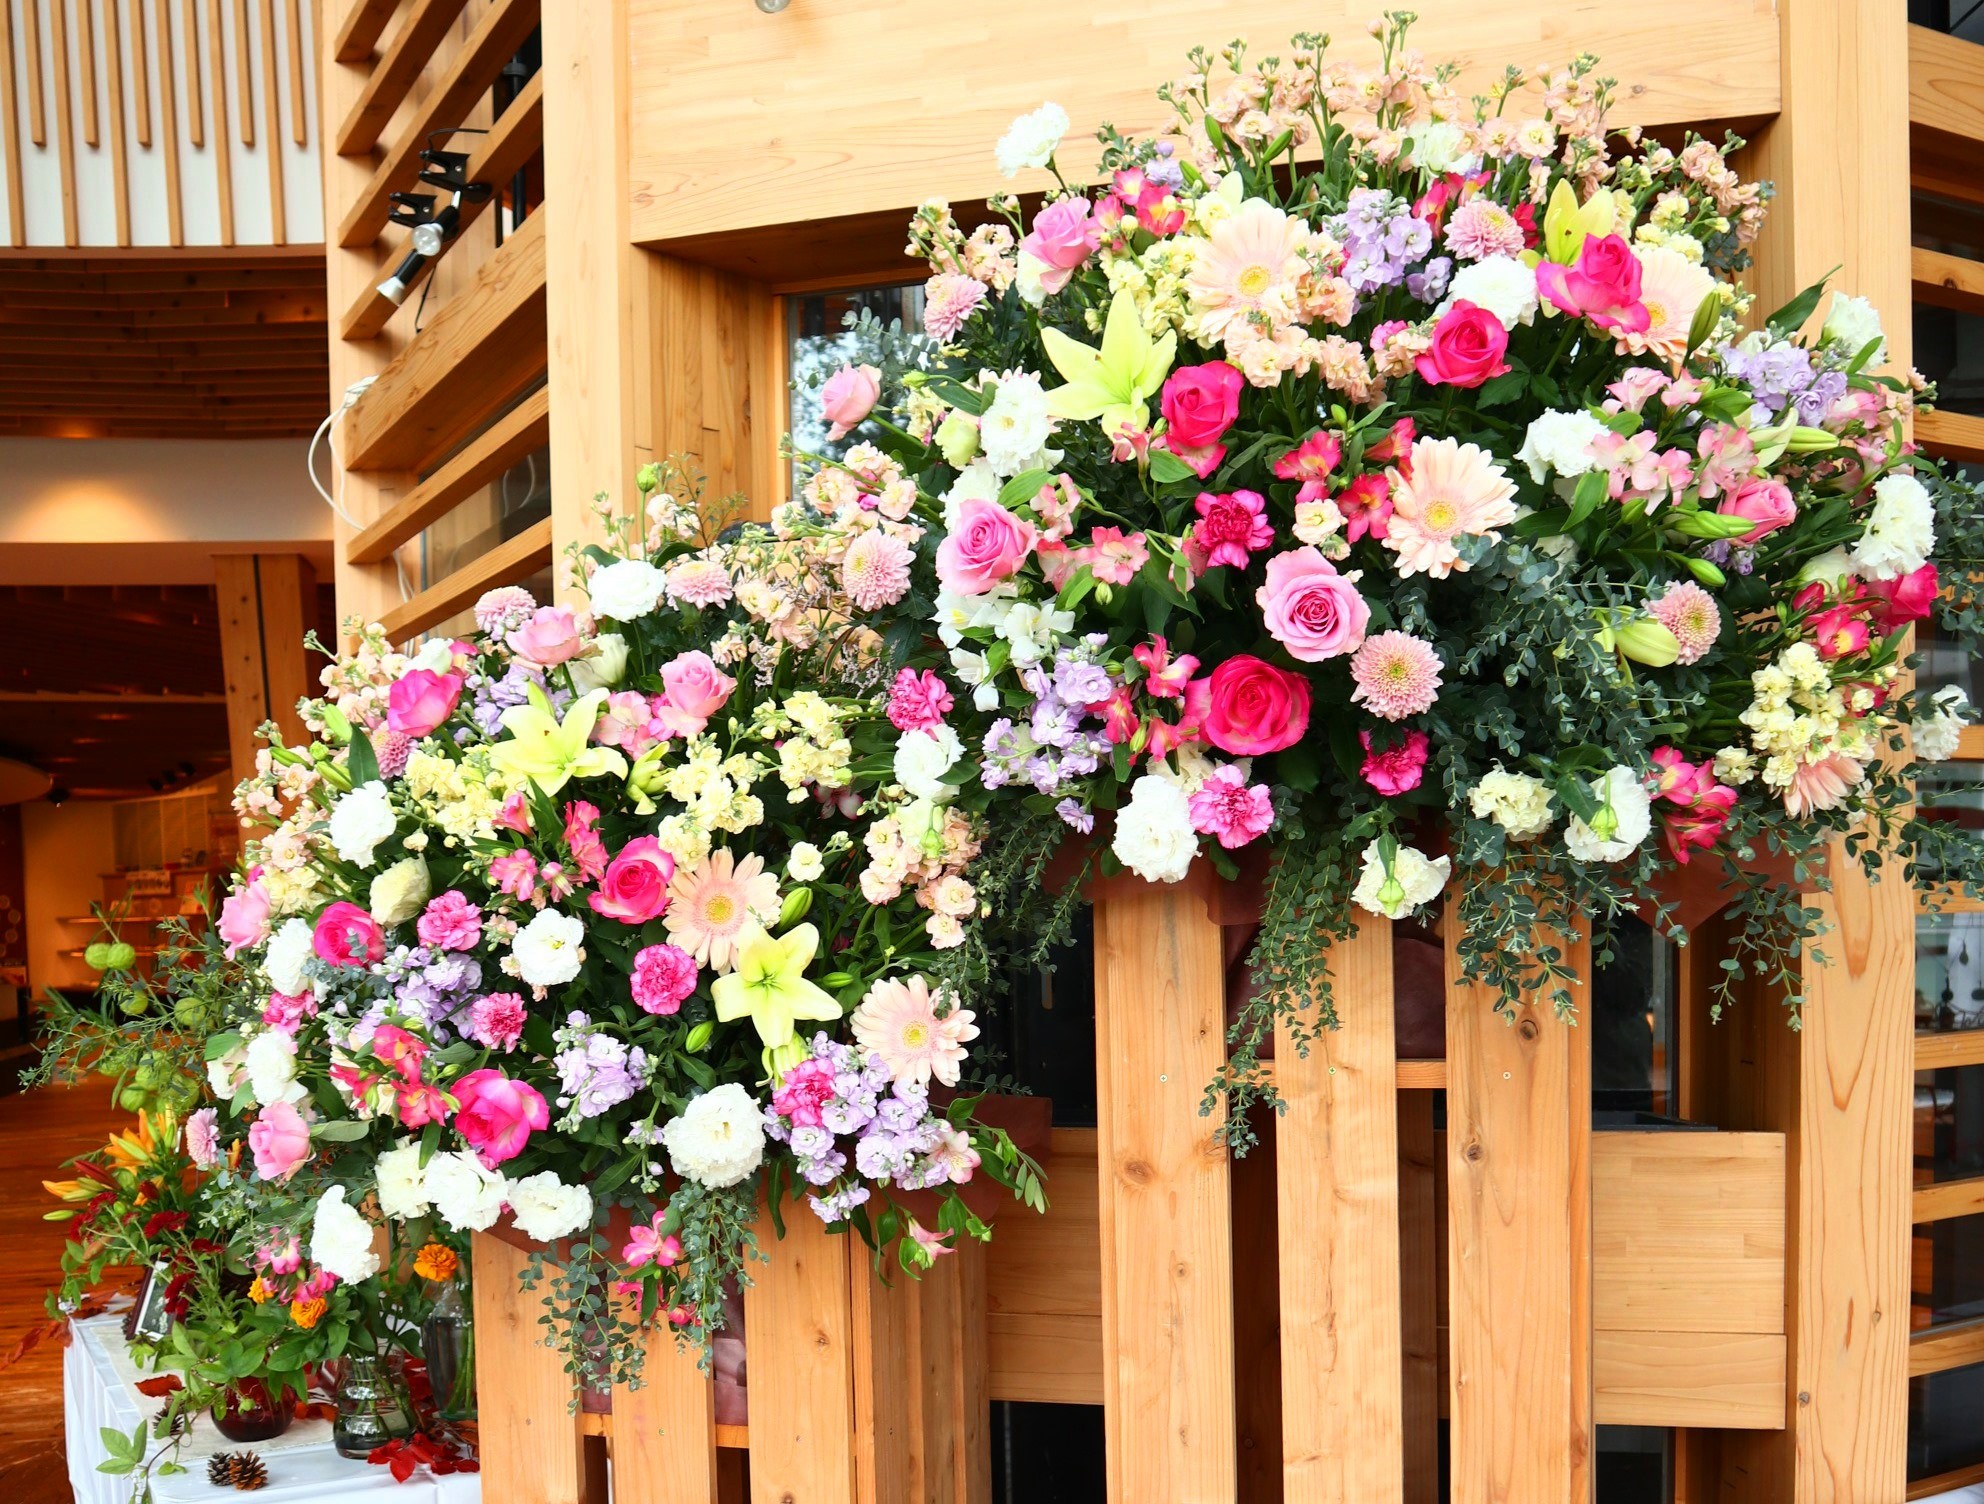 食と花の政令市にいがた 花を贈る日キャンペーン 新潟市のプレスリリース